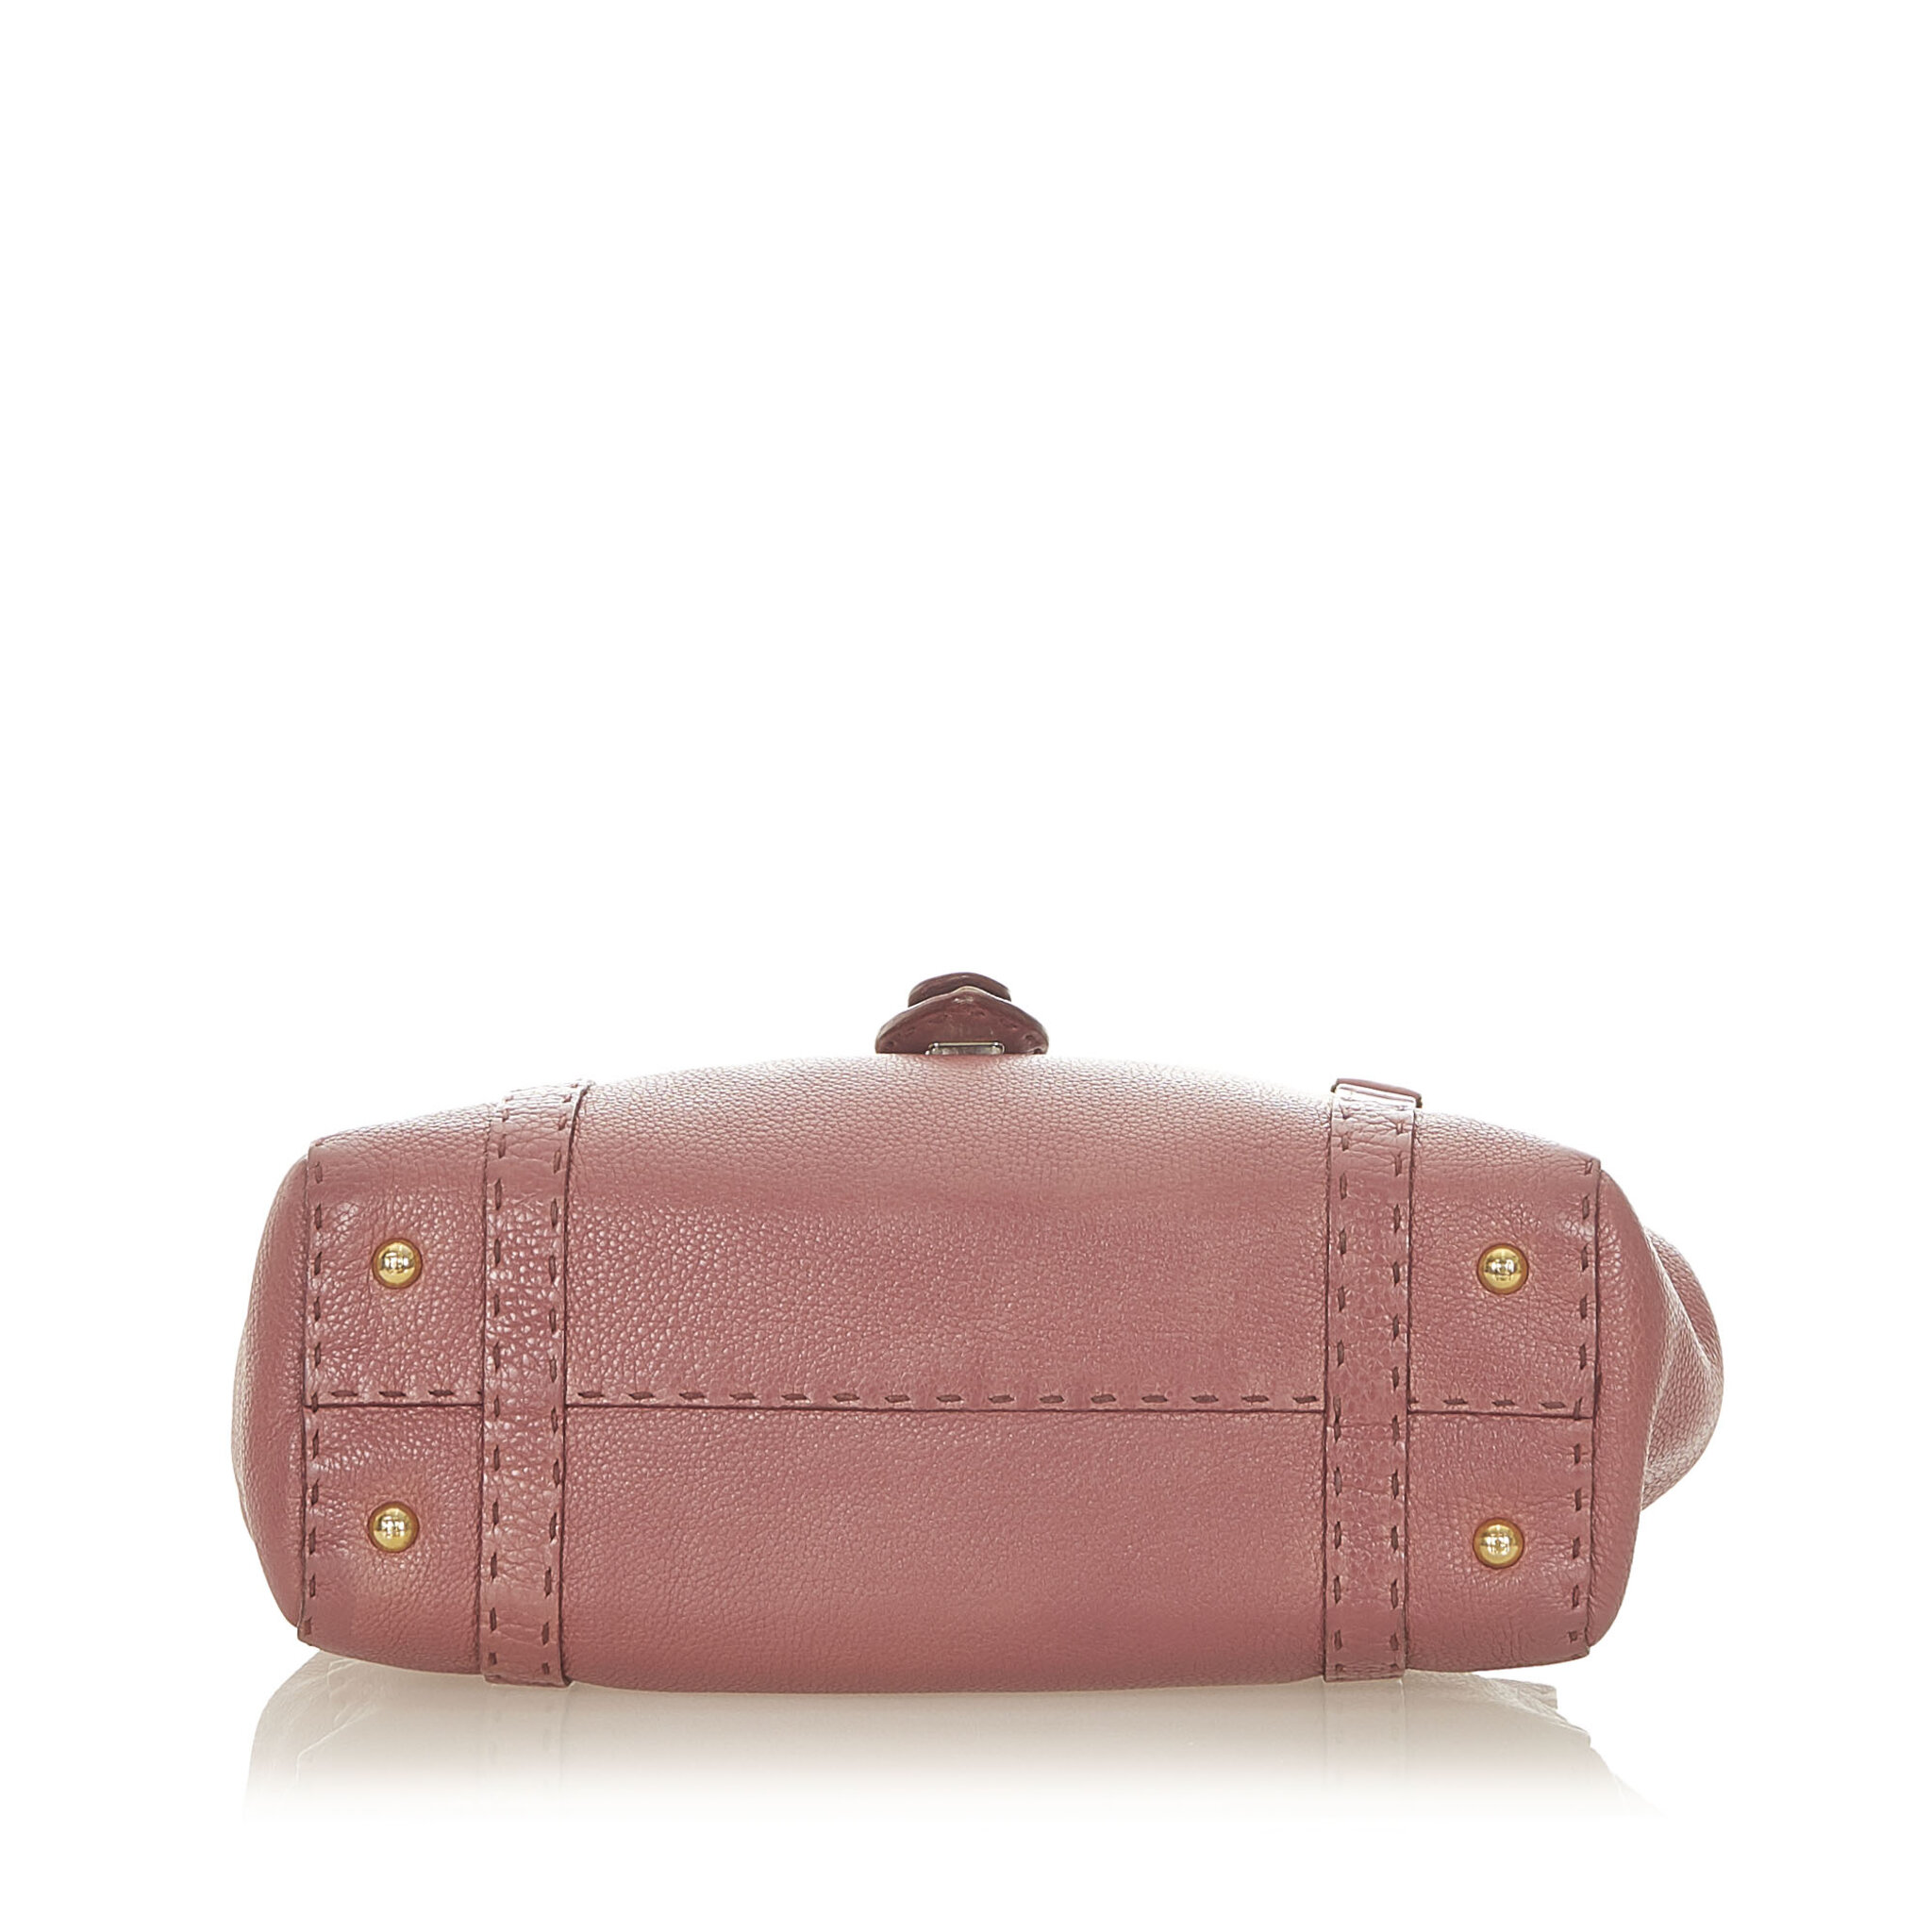 Fendi Selleria Linda Leather Handbag, pink